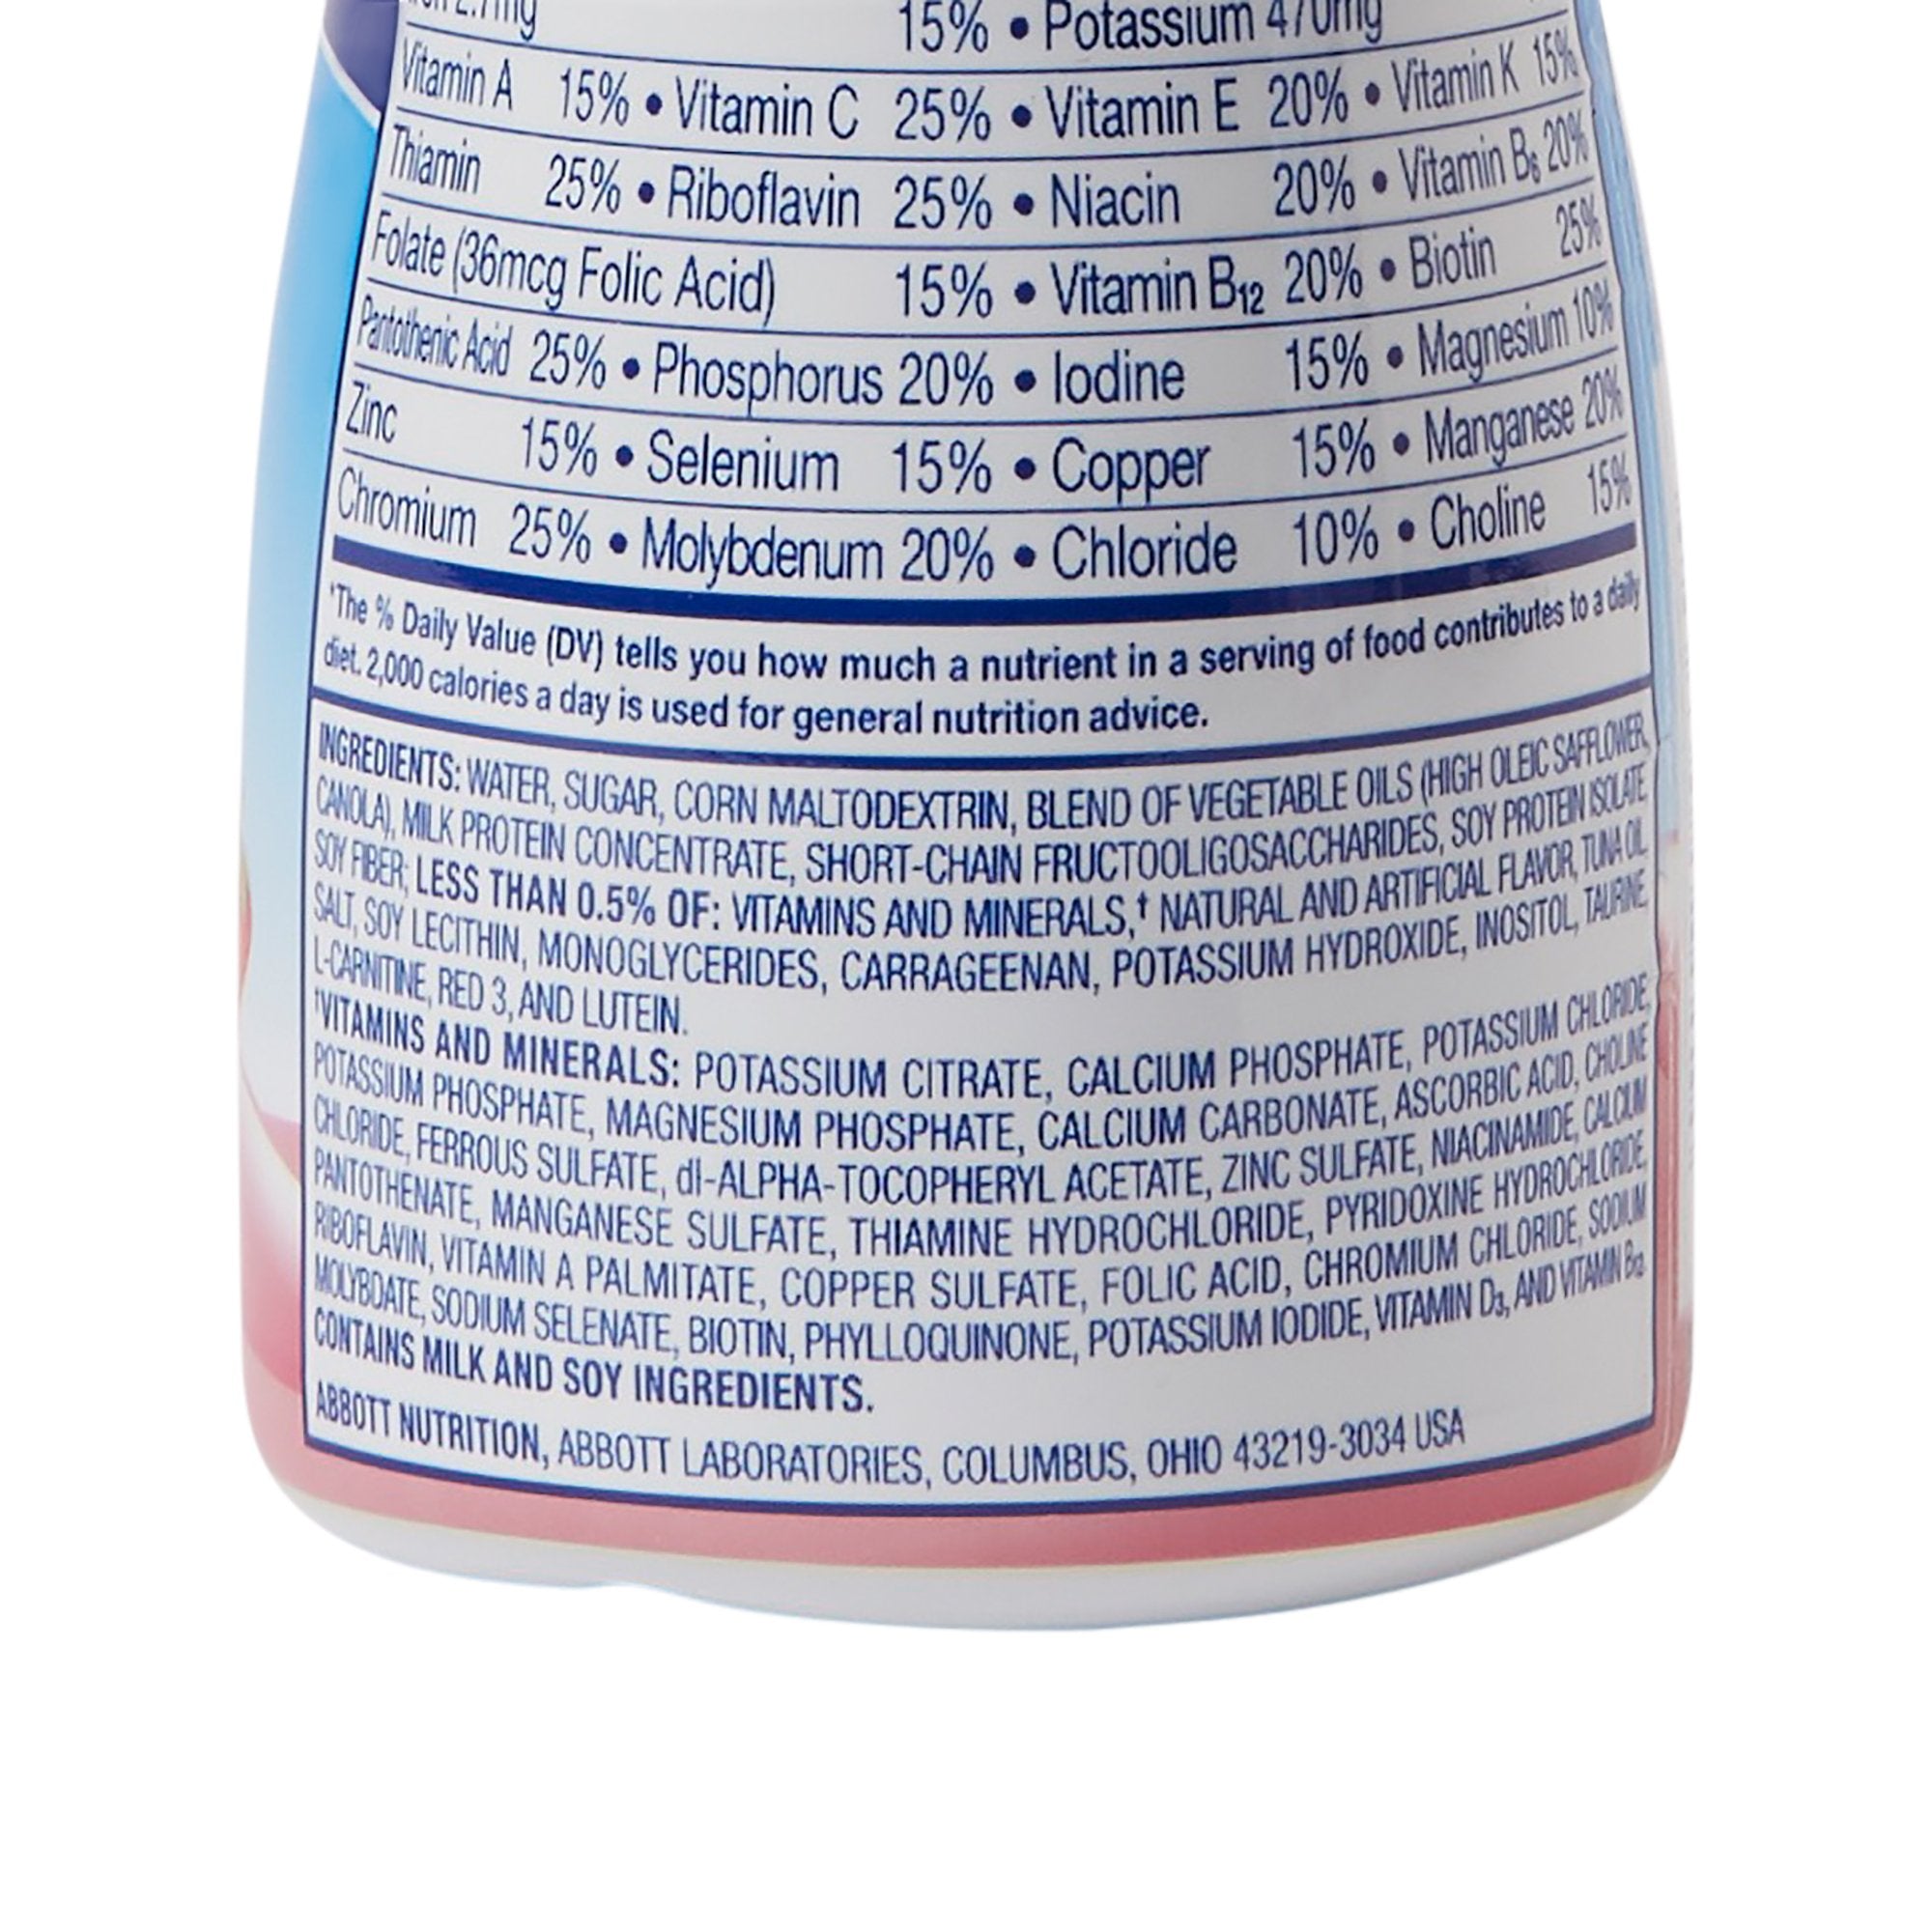 Pediatric Oral Supplement PediaSure Grow & Gain with Fiber 8 oz. Bottle Liquid Fiber